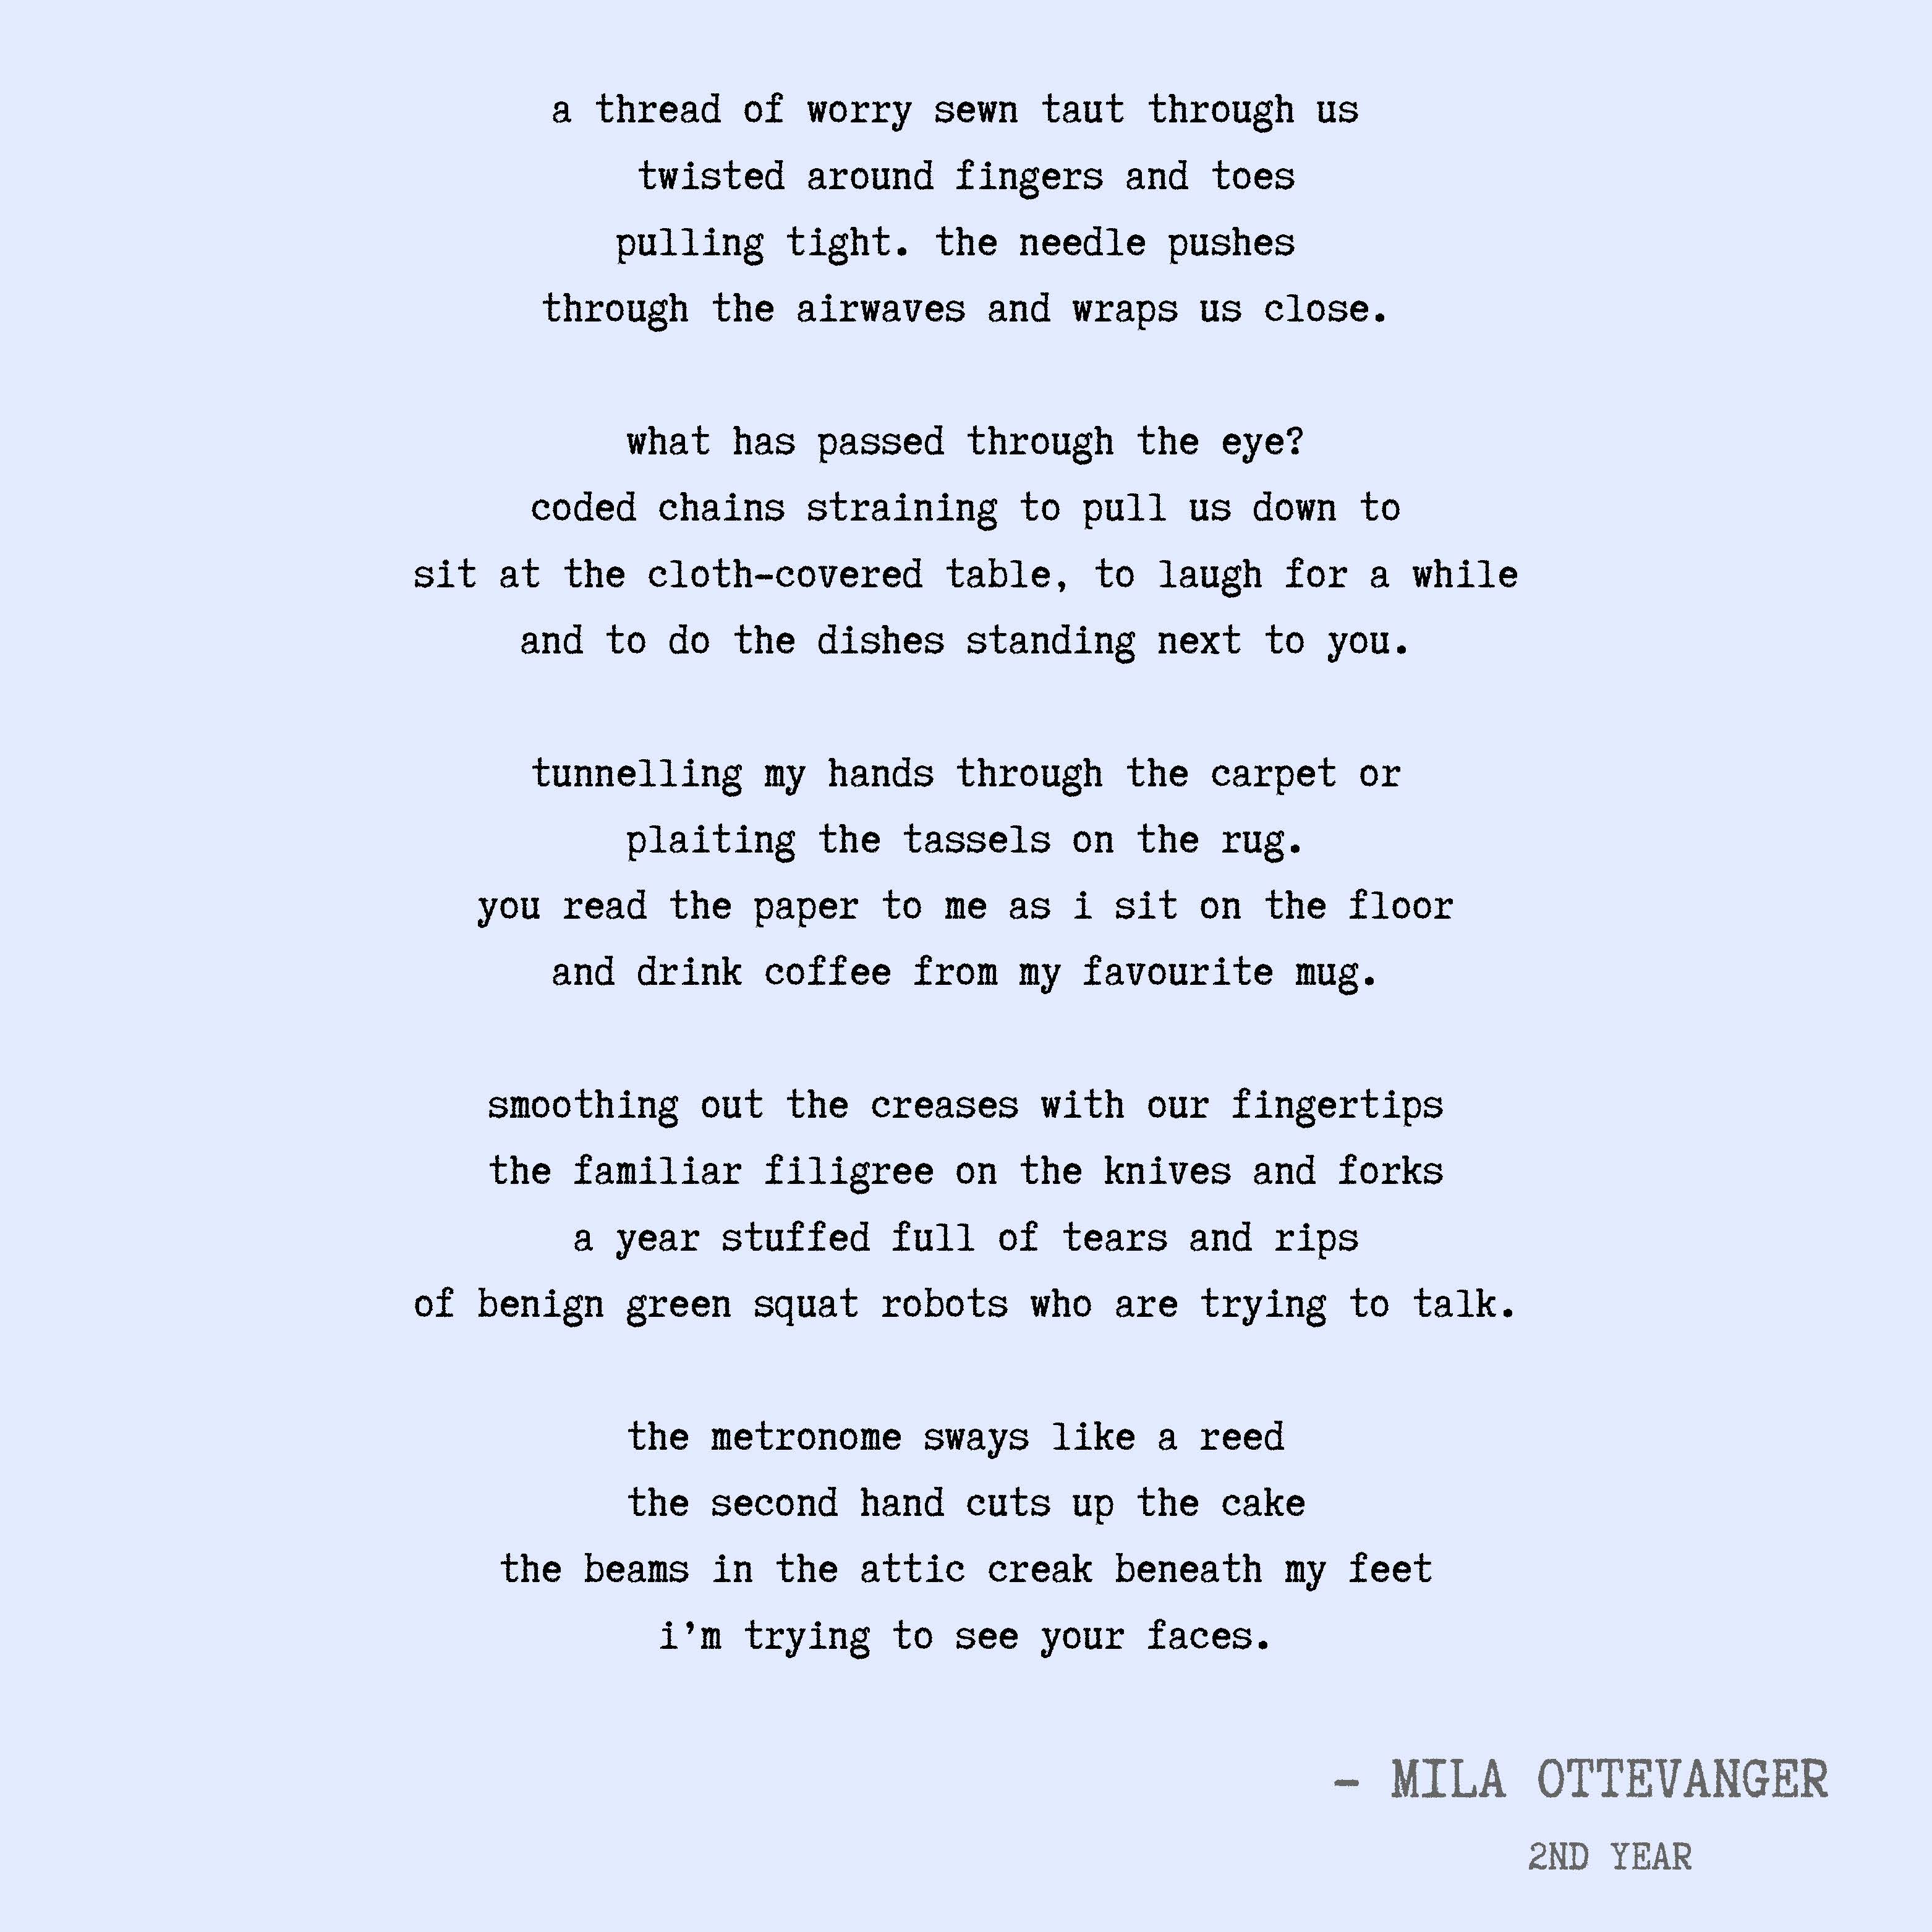 Mila Ottevanger poem